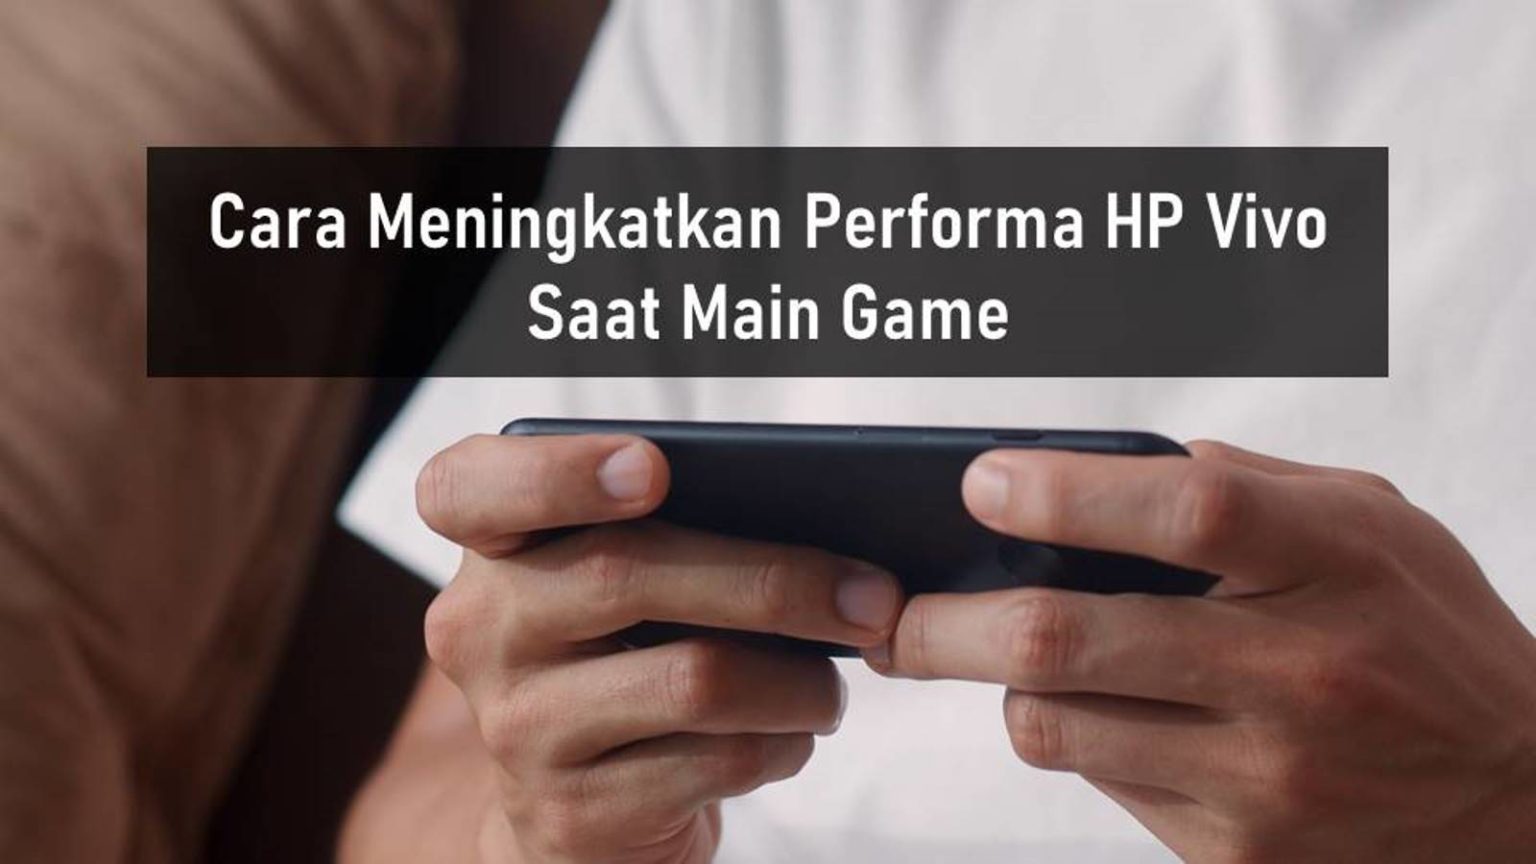 Cara Meningkatkan Performa HP Vivo Saat Main Game